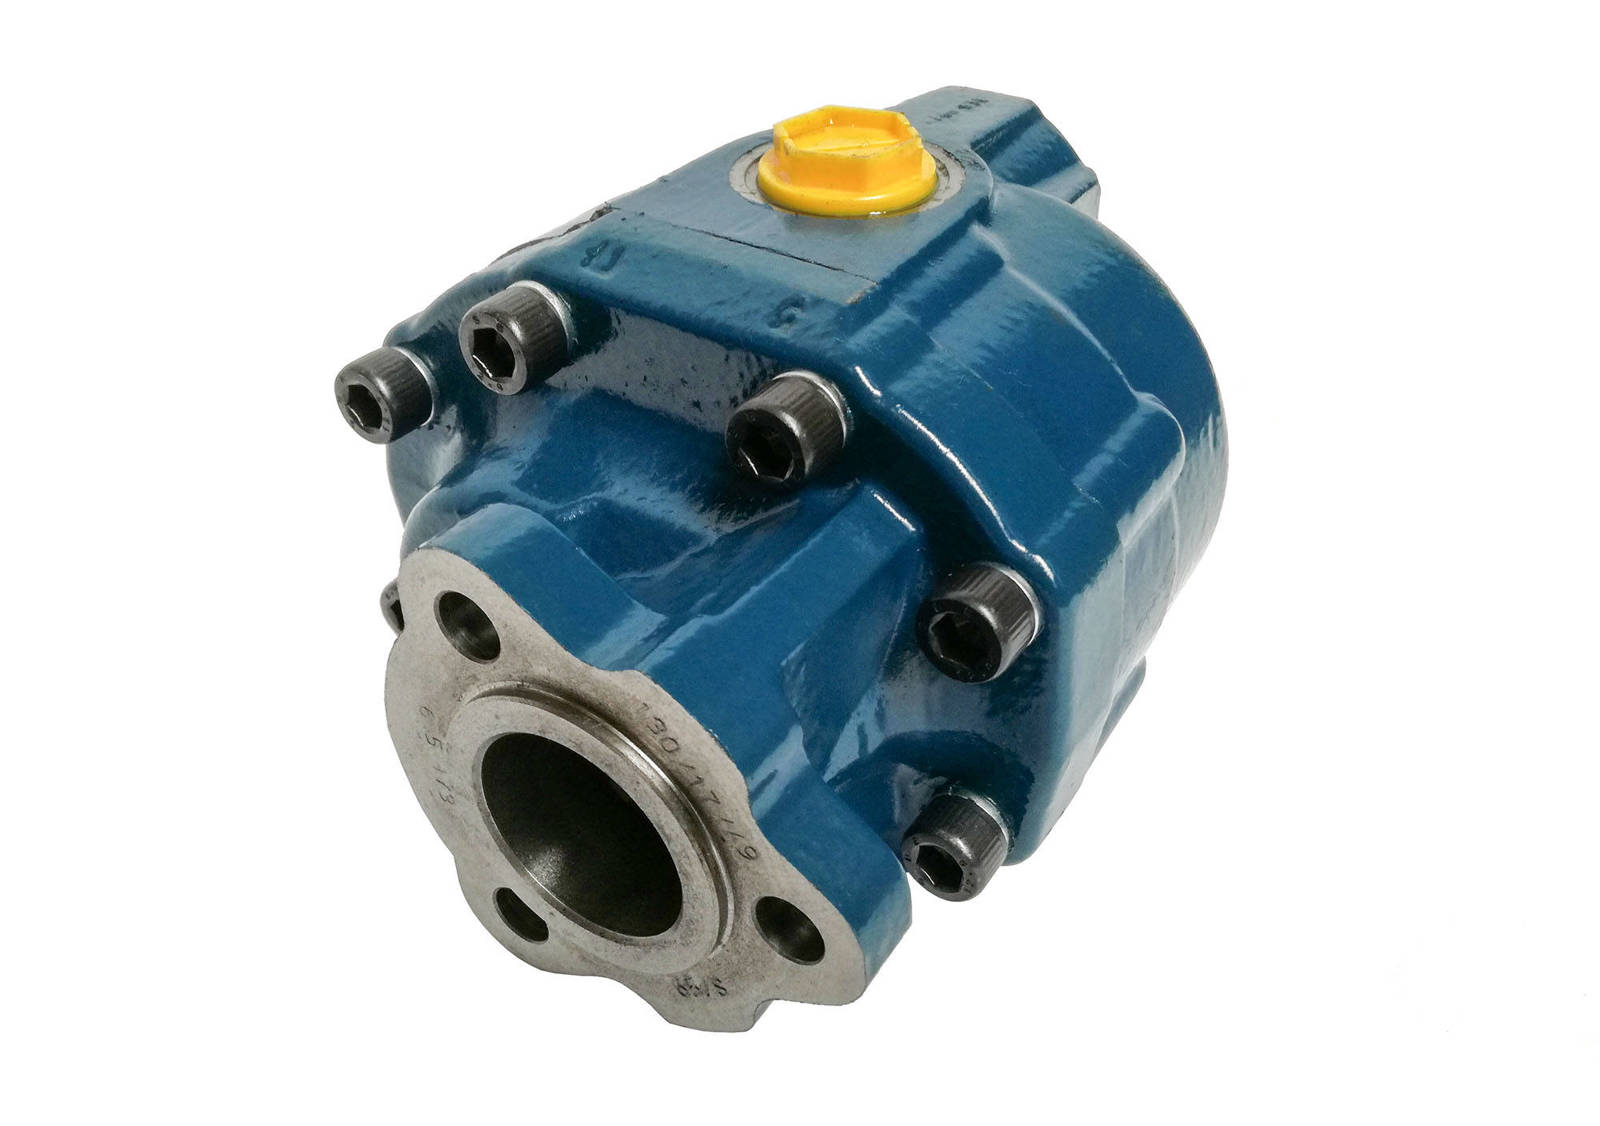 Gear hydraulic pump, 200FZ0022D0, Hydrocar FZ0 22, right-hand drive, UNI